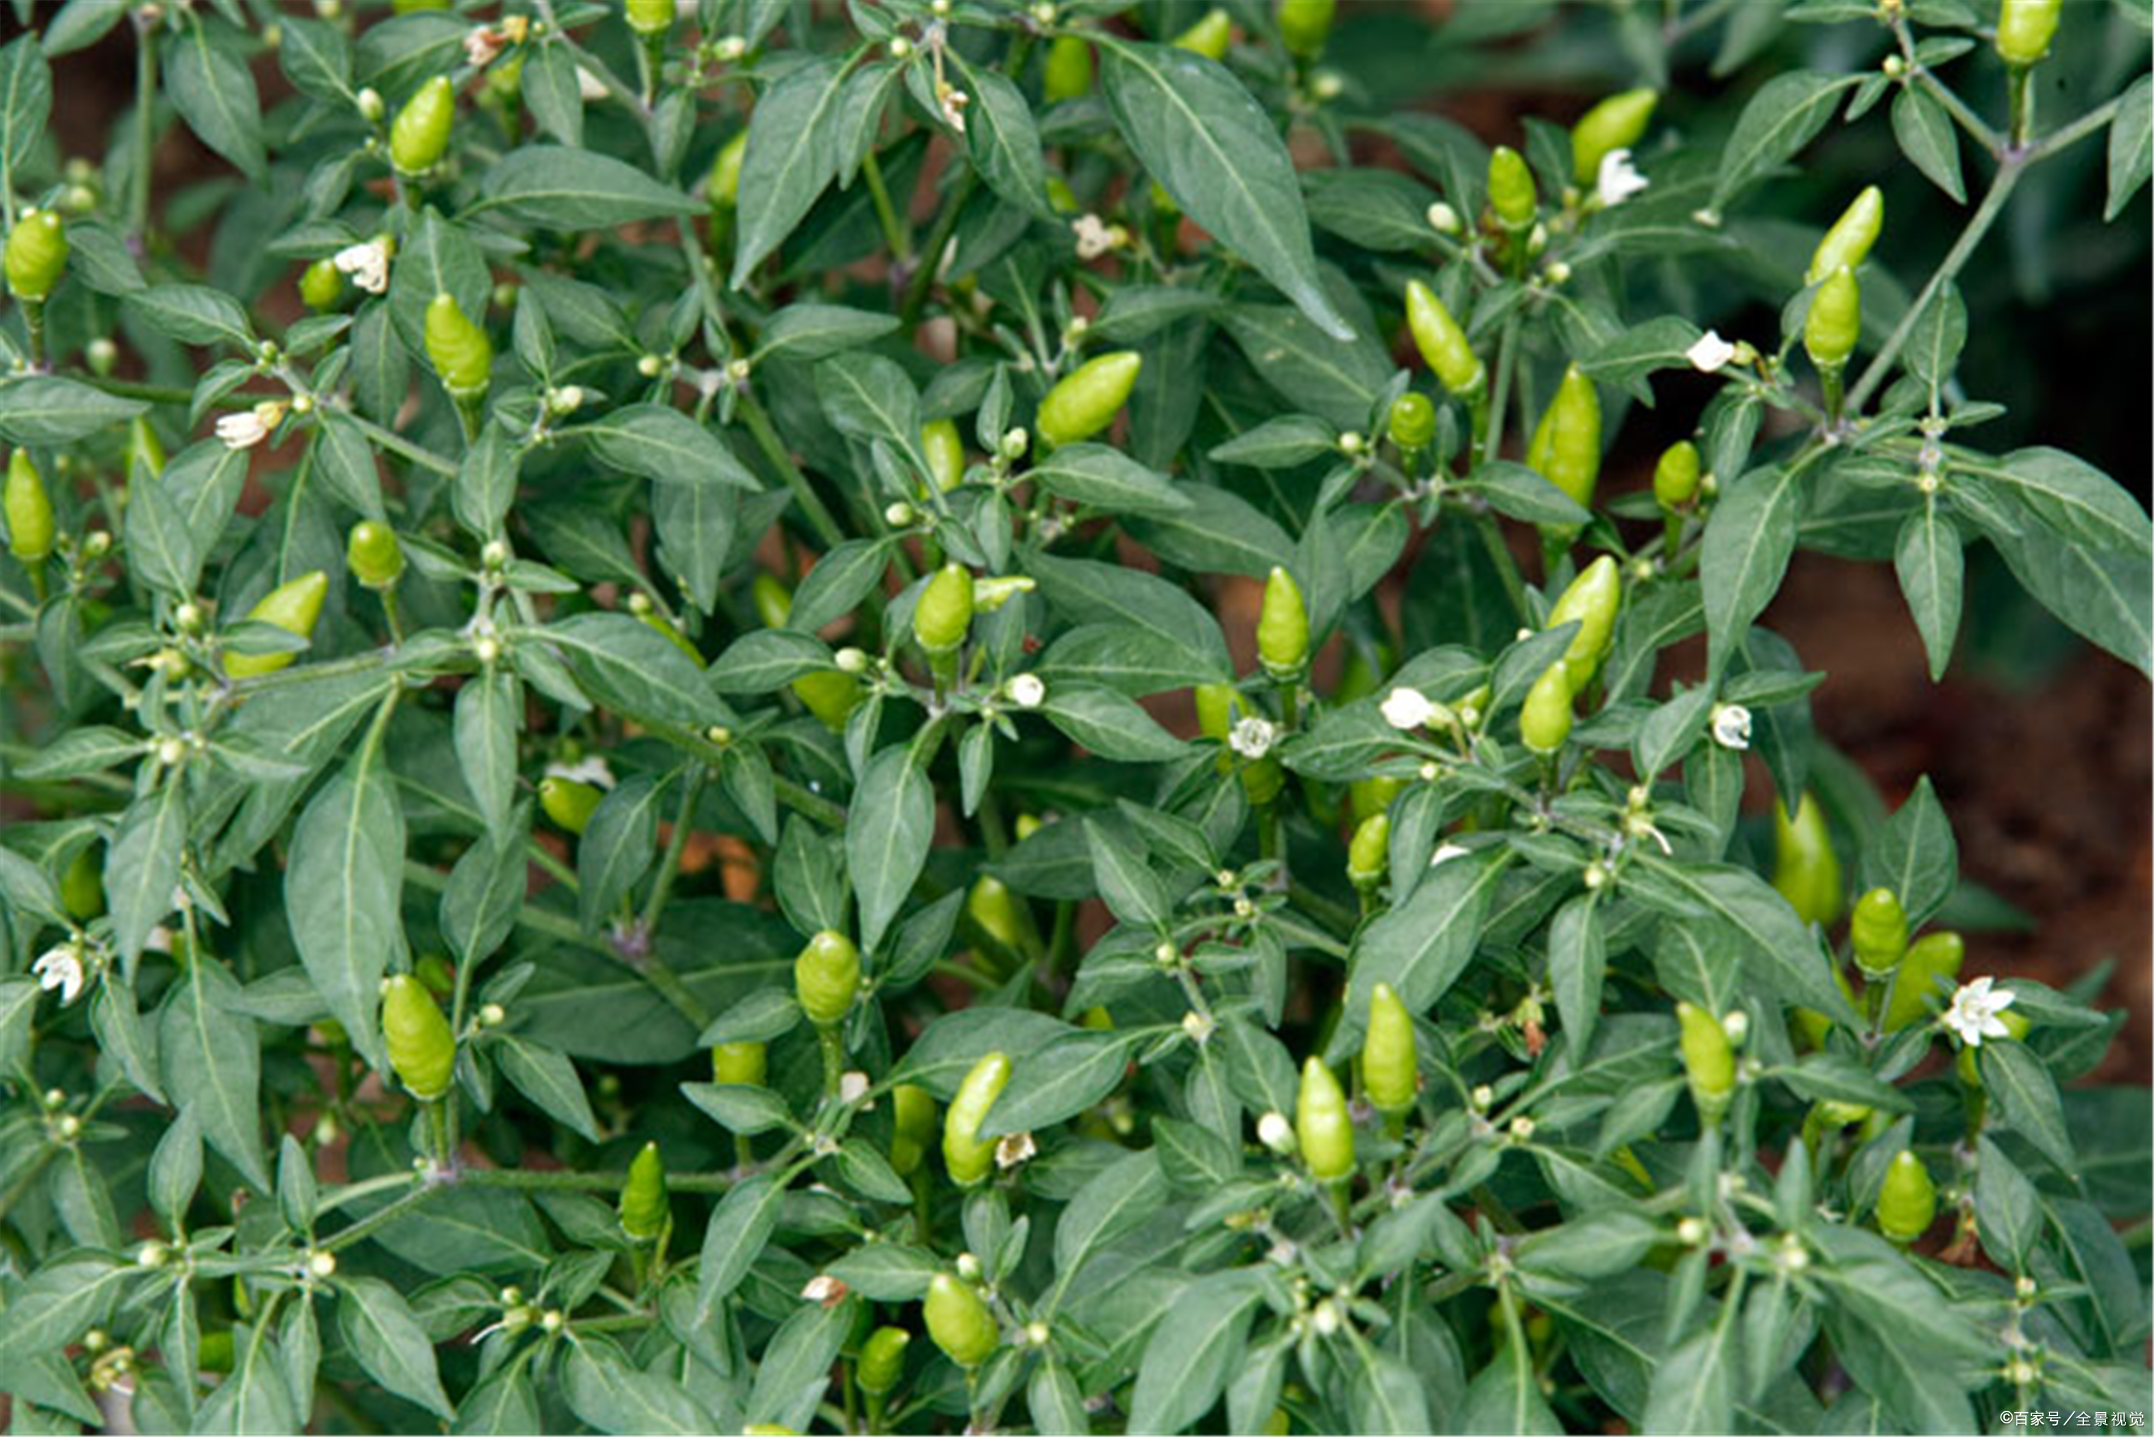 农民种小米椒,做好3点管理措施,减少僵椒数量,提质增收